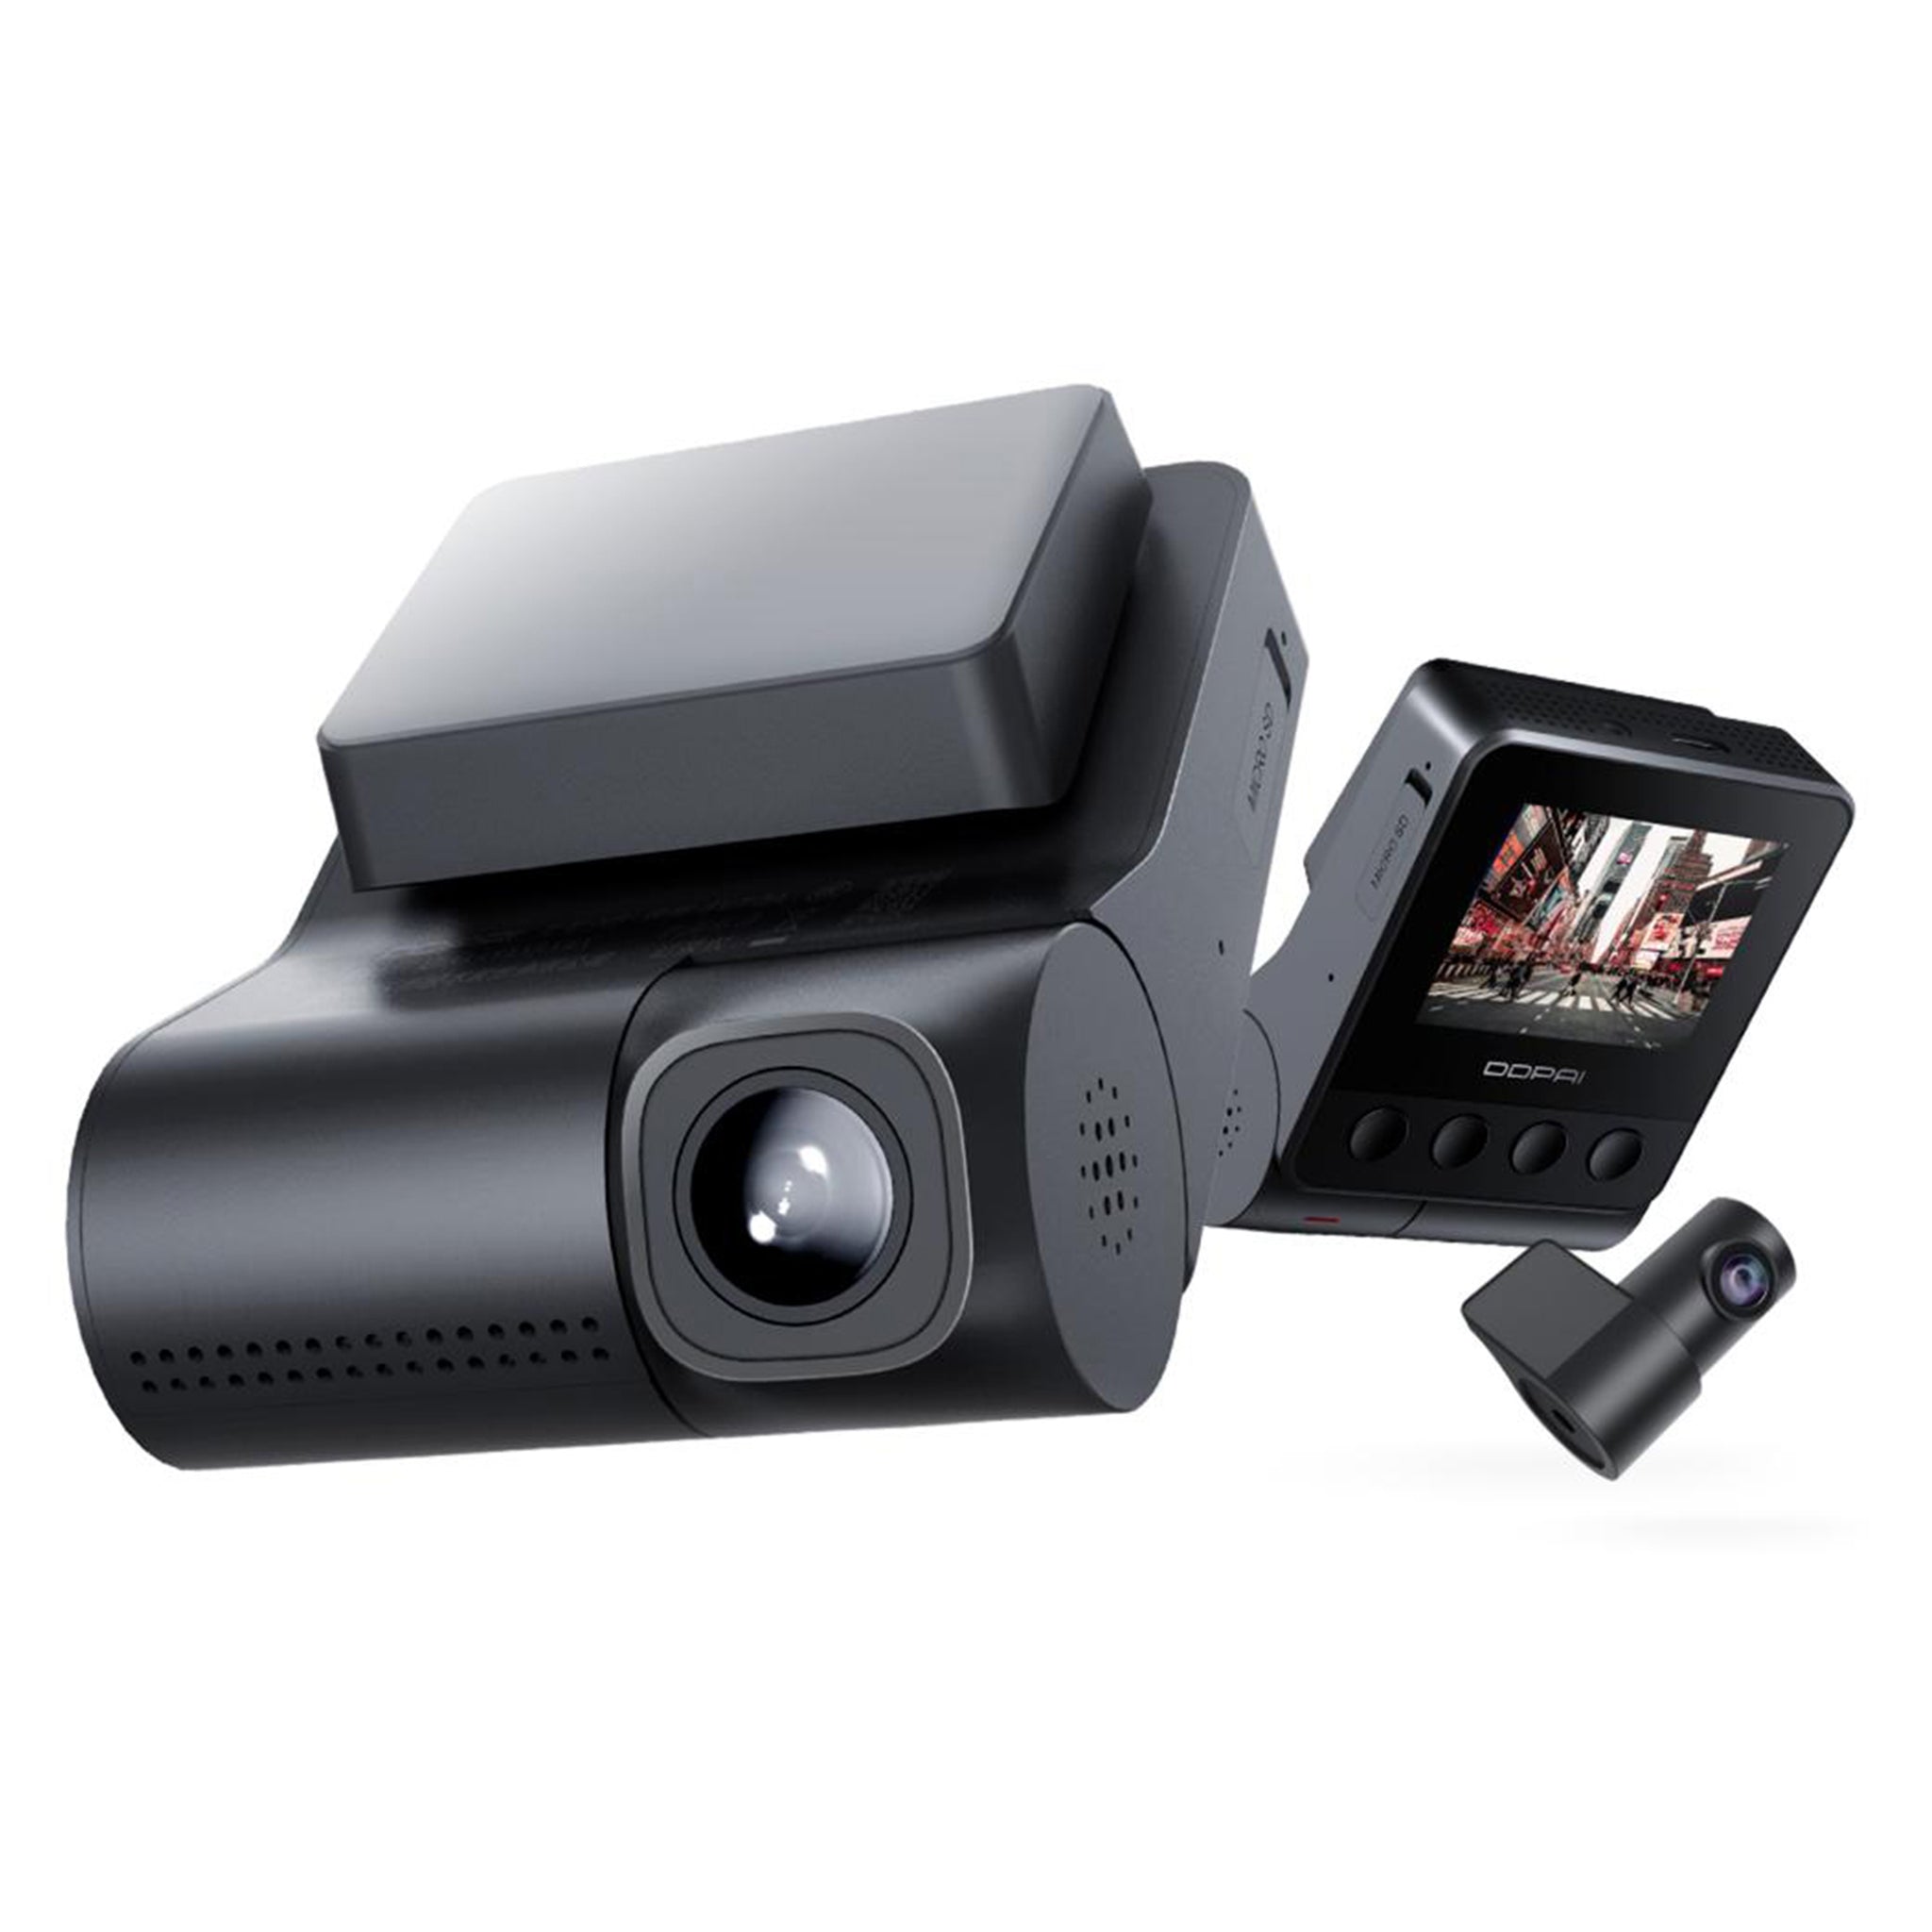 DDPAI Z40 Dual Cam (Front + Rear) GPS 1944P HD Wifi Dashcam – Tick Tech Go